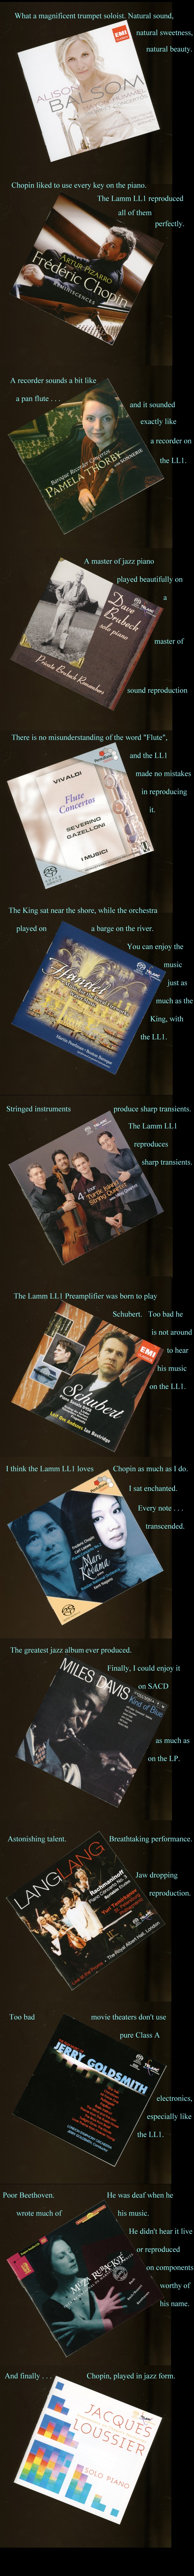 lamm-ll1-preamplifier-music-albums-column